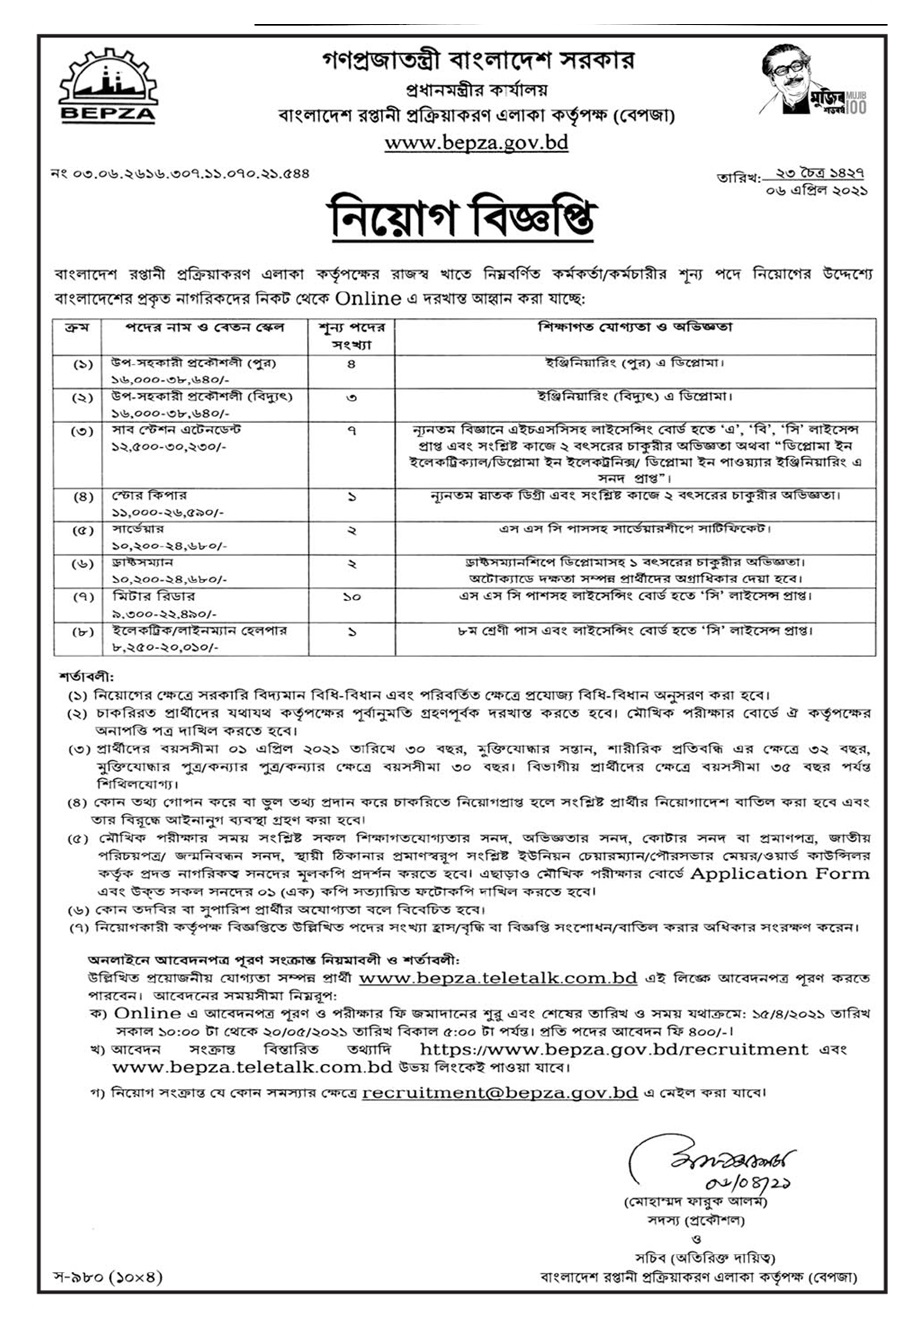 সরকারি চাকরির খবর ২০২১ - Government job circular 2021 - bd jobs media